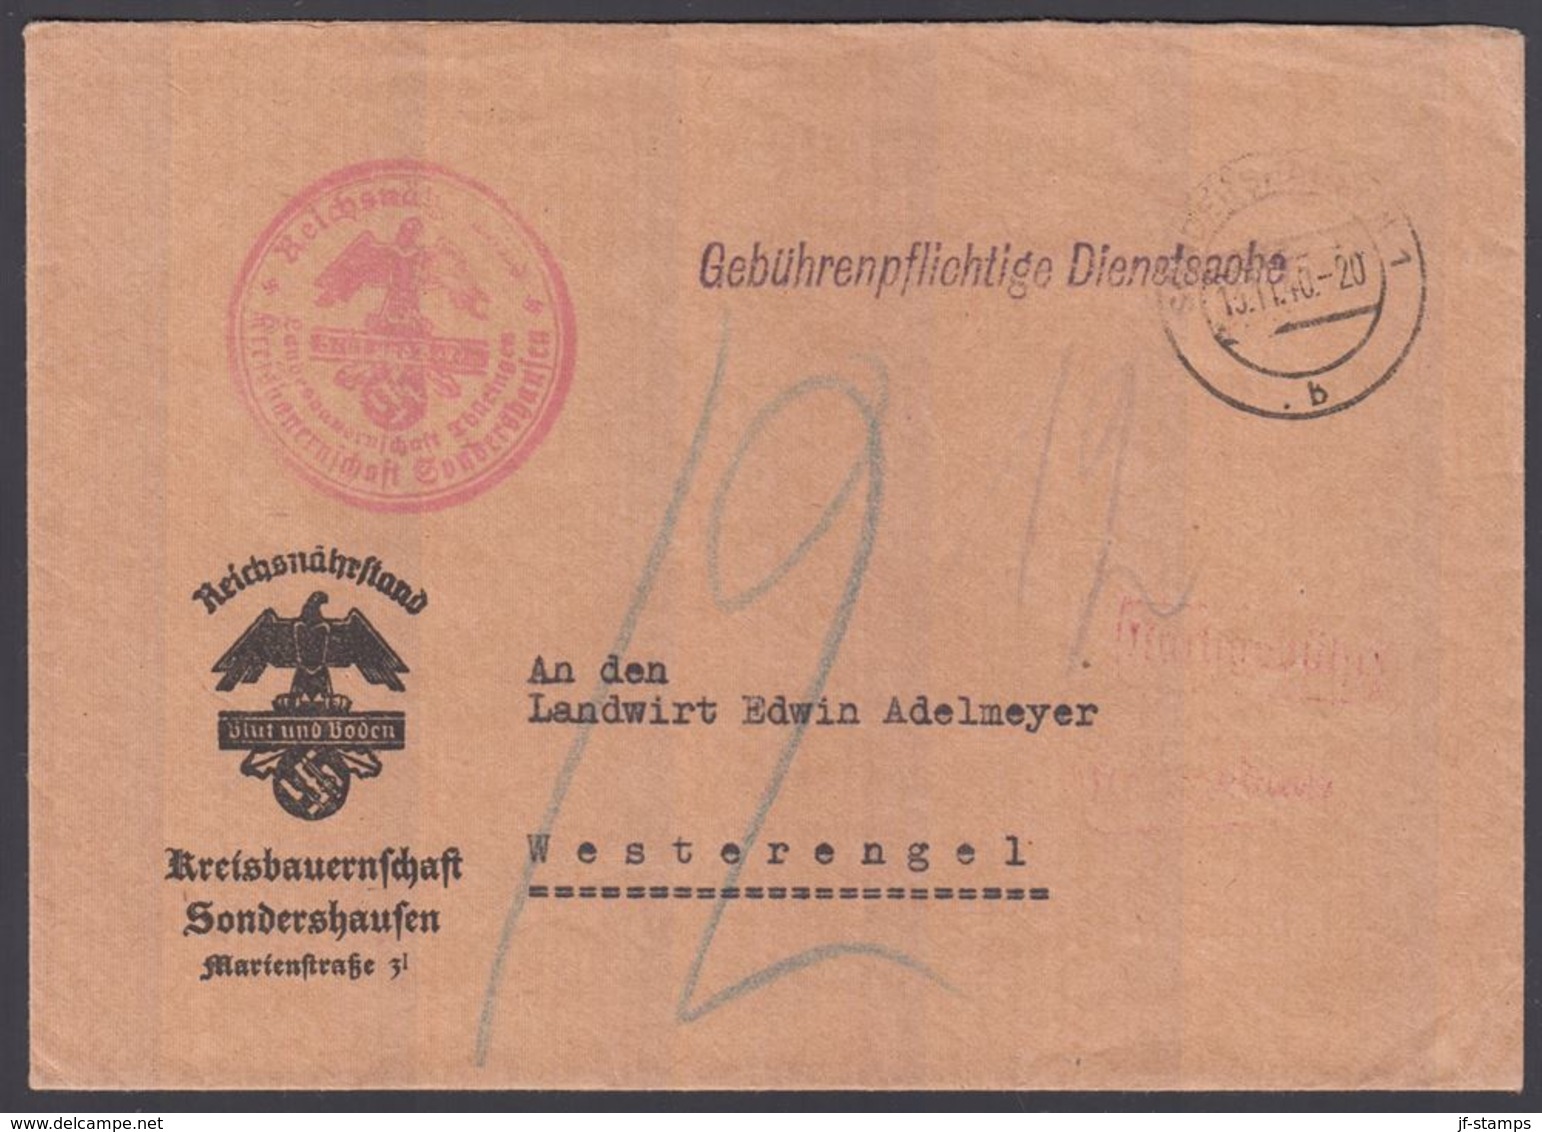 1940. DEUTSCHES REICH. Gebührenpflichtige Dienstsache Kreisbauernschaft Sondershausse... () - JF195315 - Agriculture